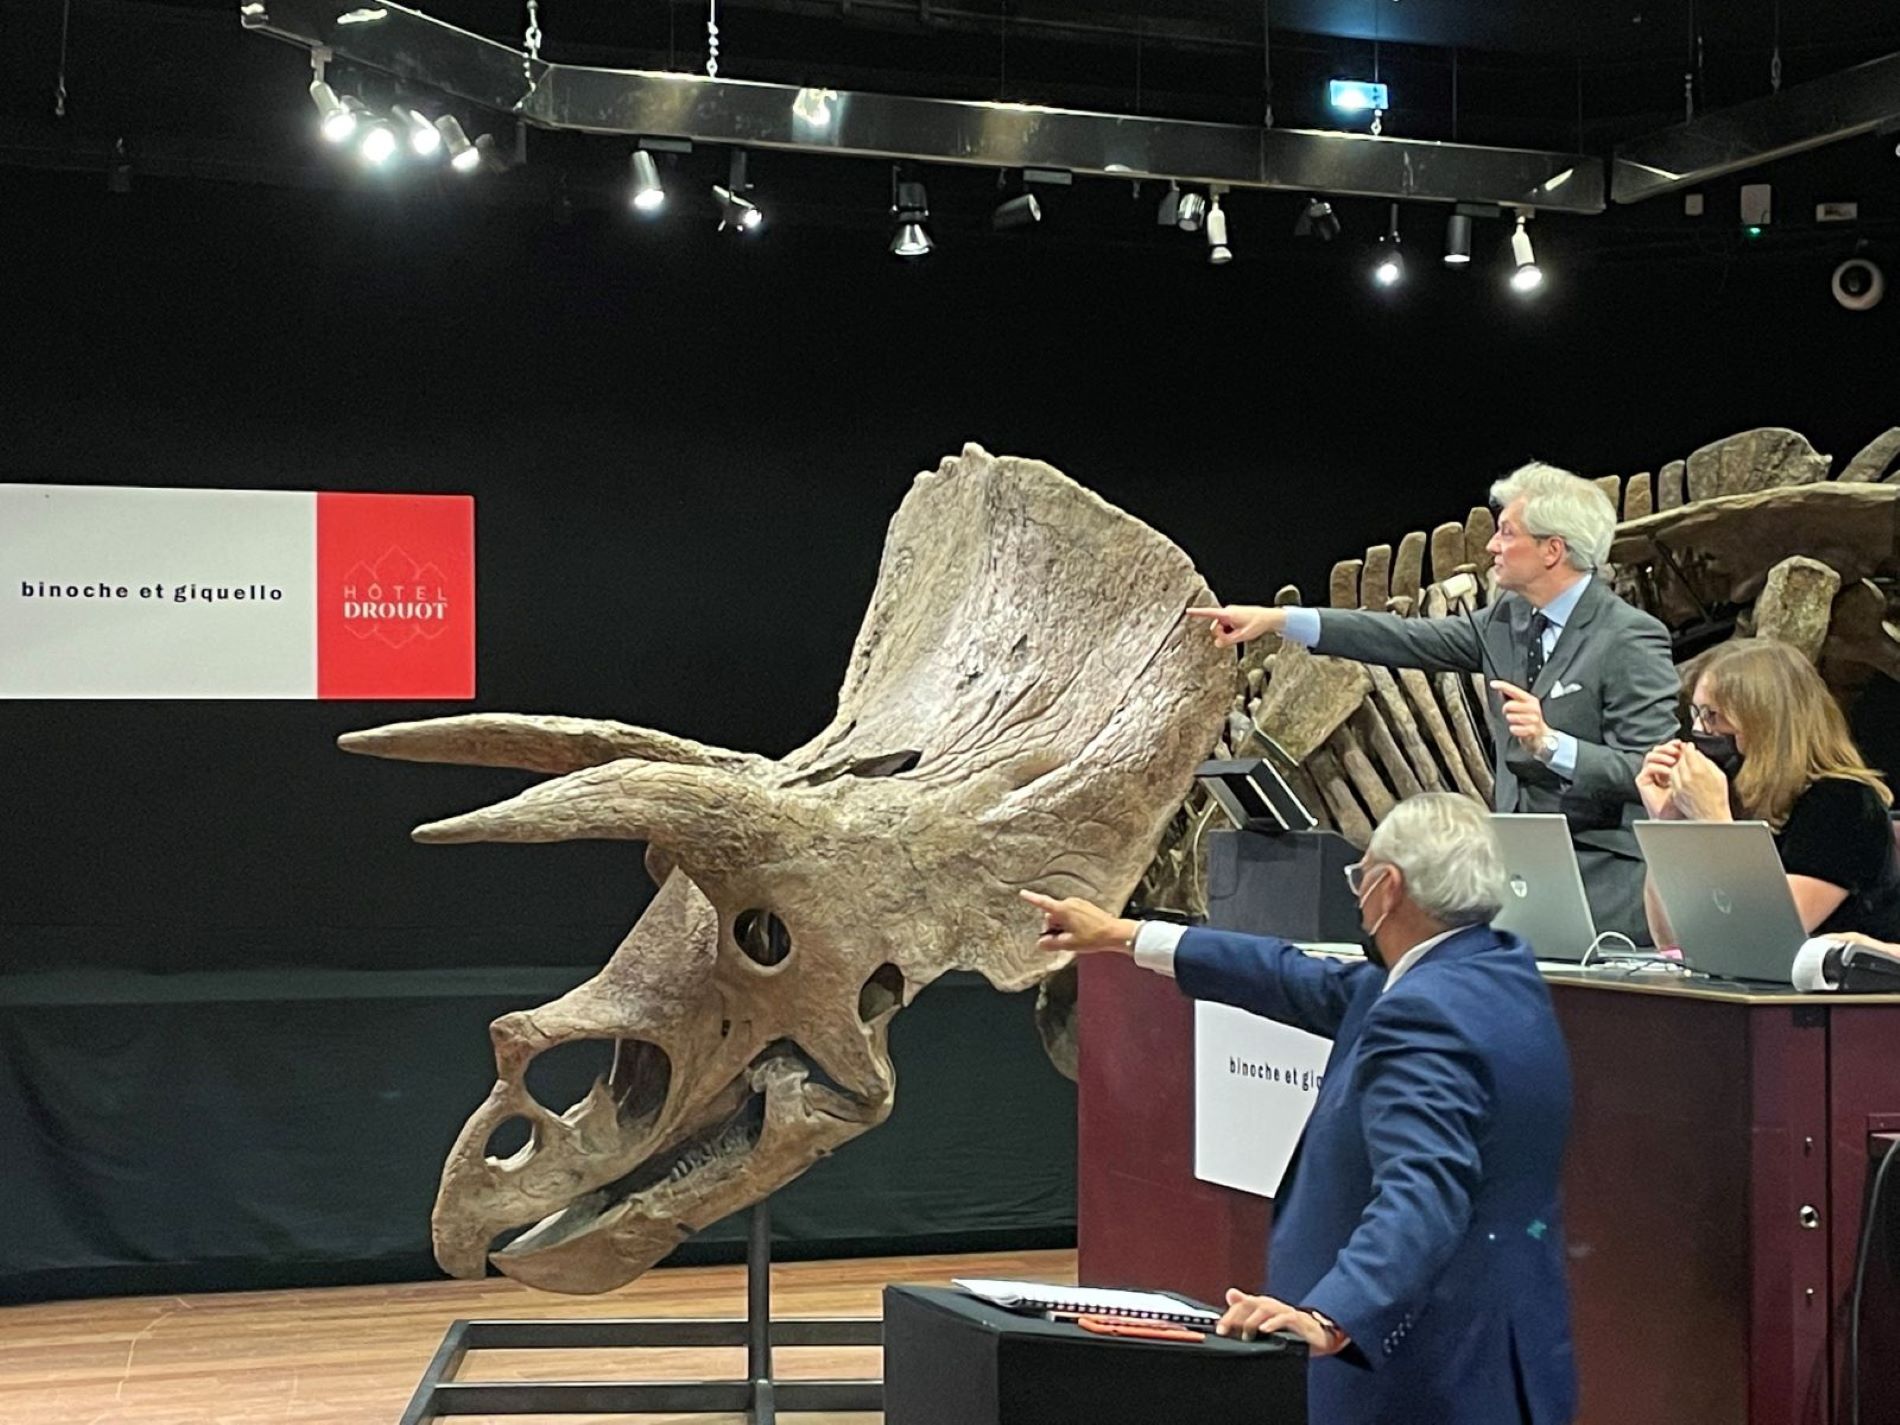 Més de 6 milions d'euros, el preu del triceratops més gran mai trobat